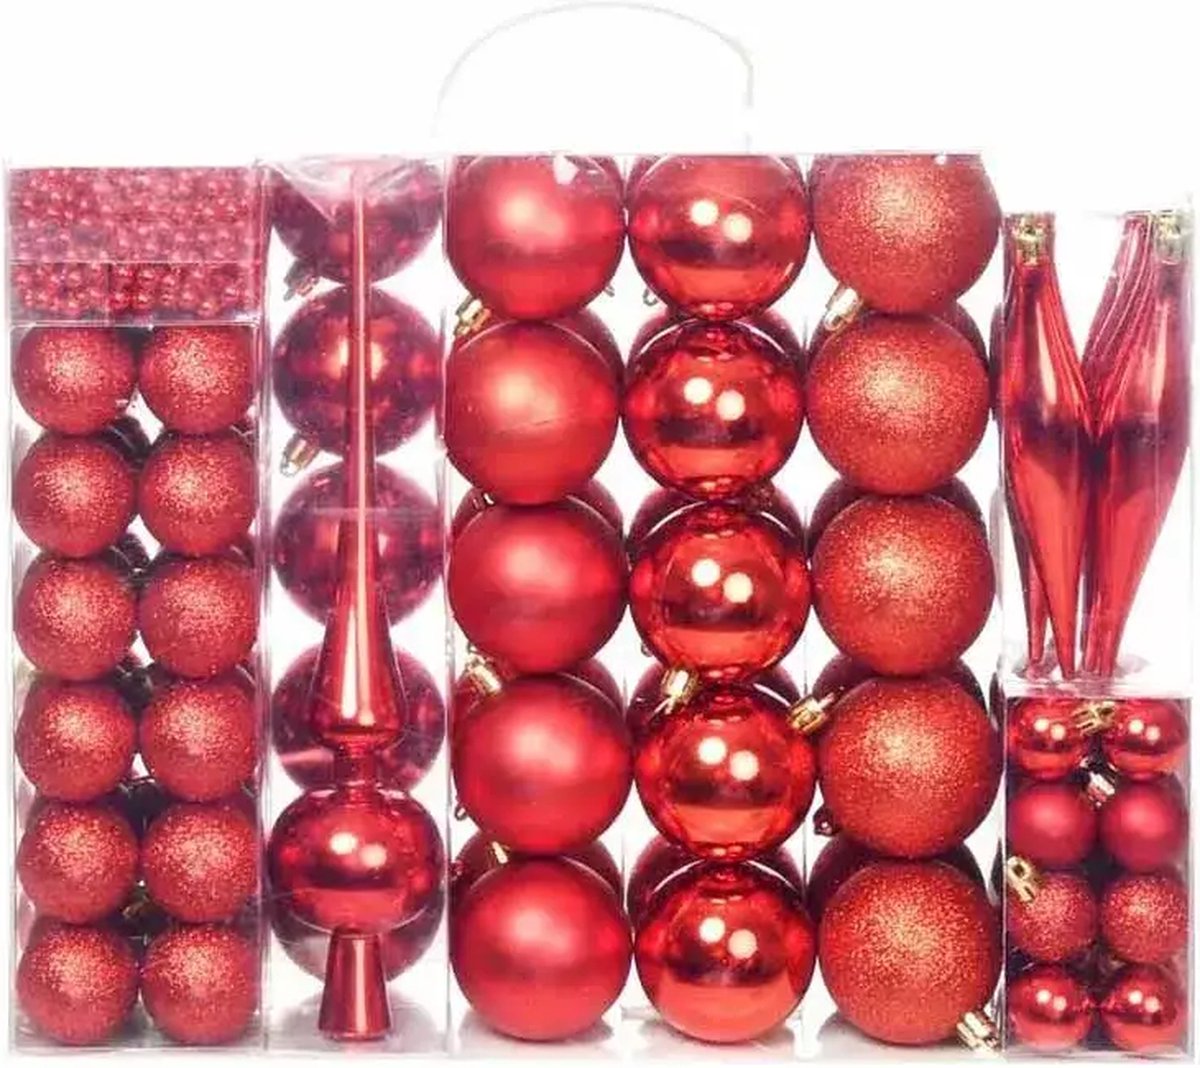 112 delige Kerstboom versiering - Rood - Kerstballen / Ballen / Lint / Piek - Kerstmis decoratie boom